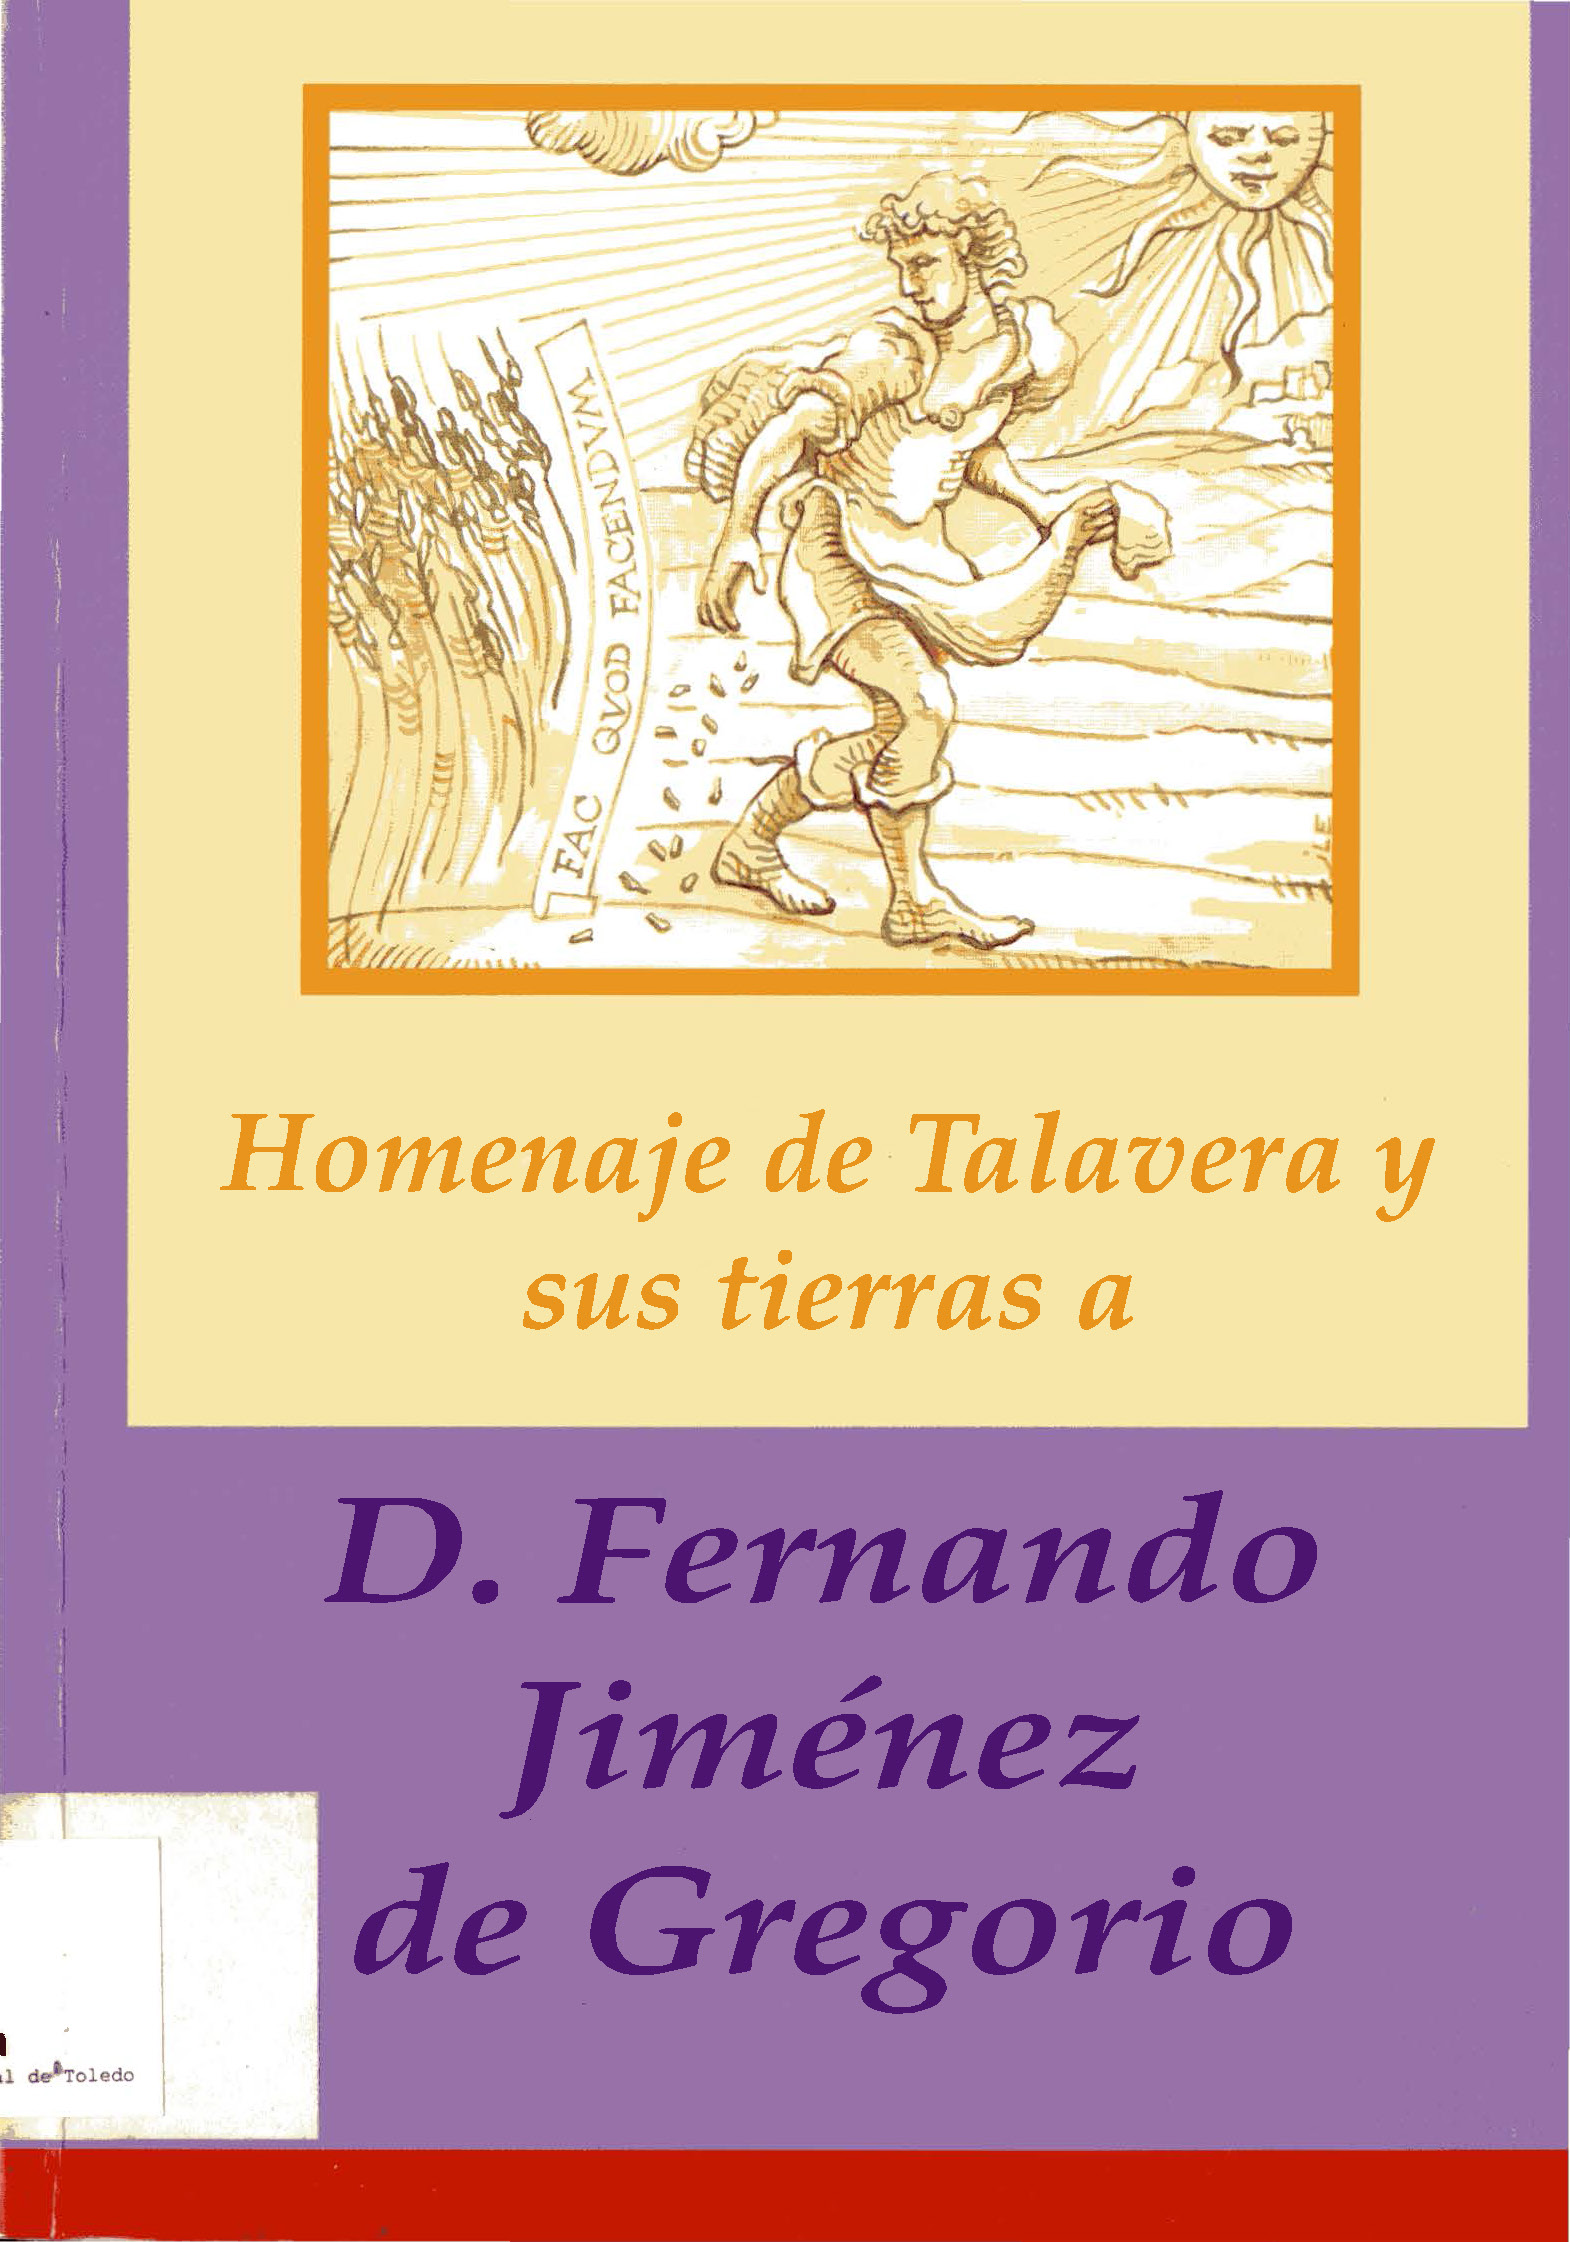 Imagen de portada del libro Homenaje de Talavera y sus tierras a Don Fernando Jiménez de Gregorio